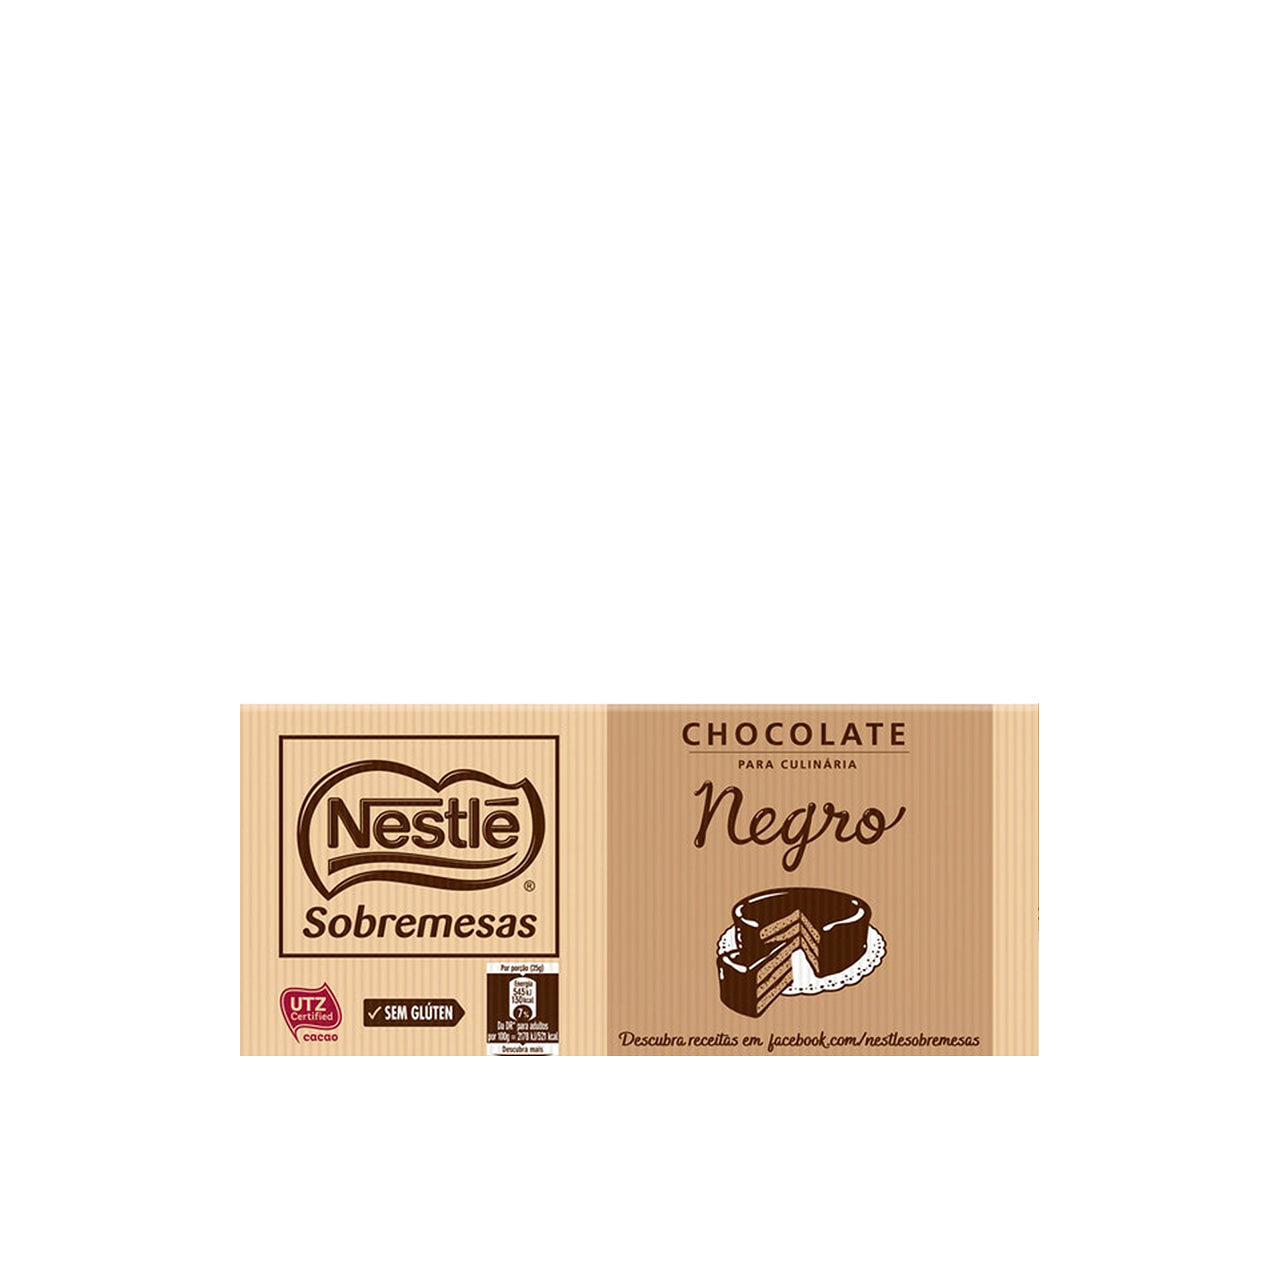 Nestlé Chocolate Culinario 44% Cacao 200 gr - Pack 2 x 200 gr